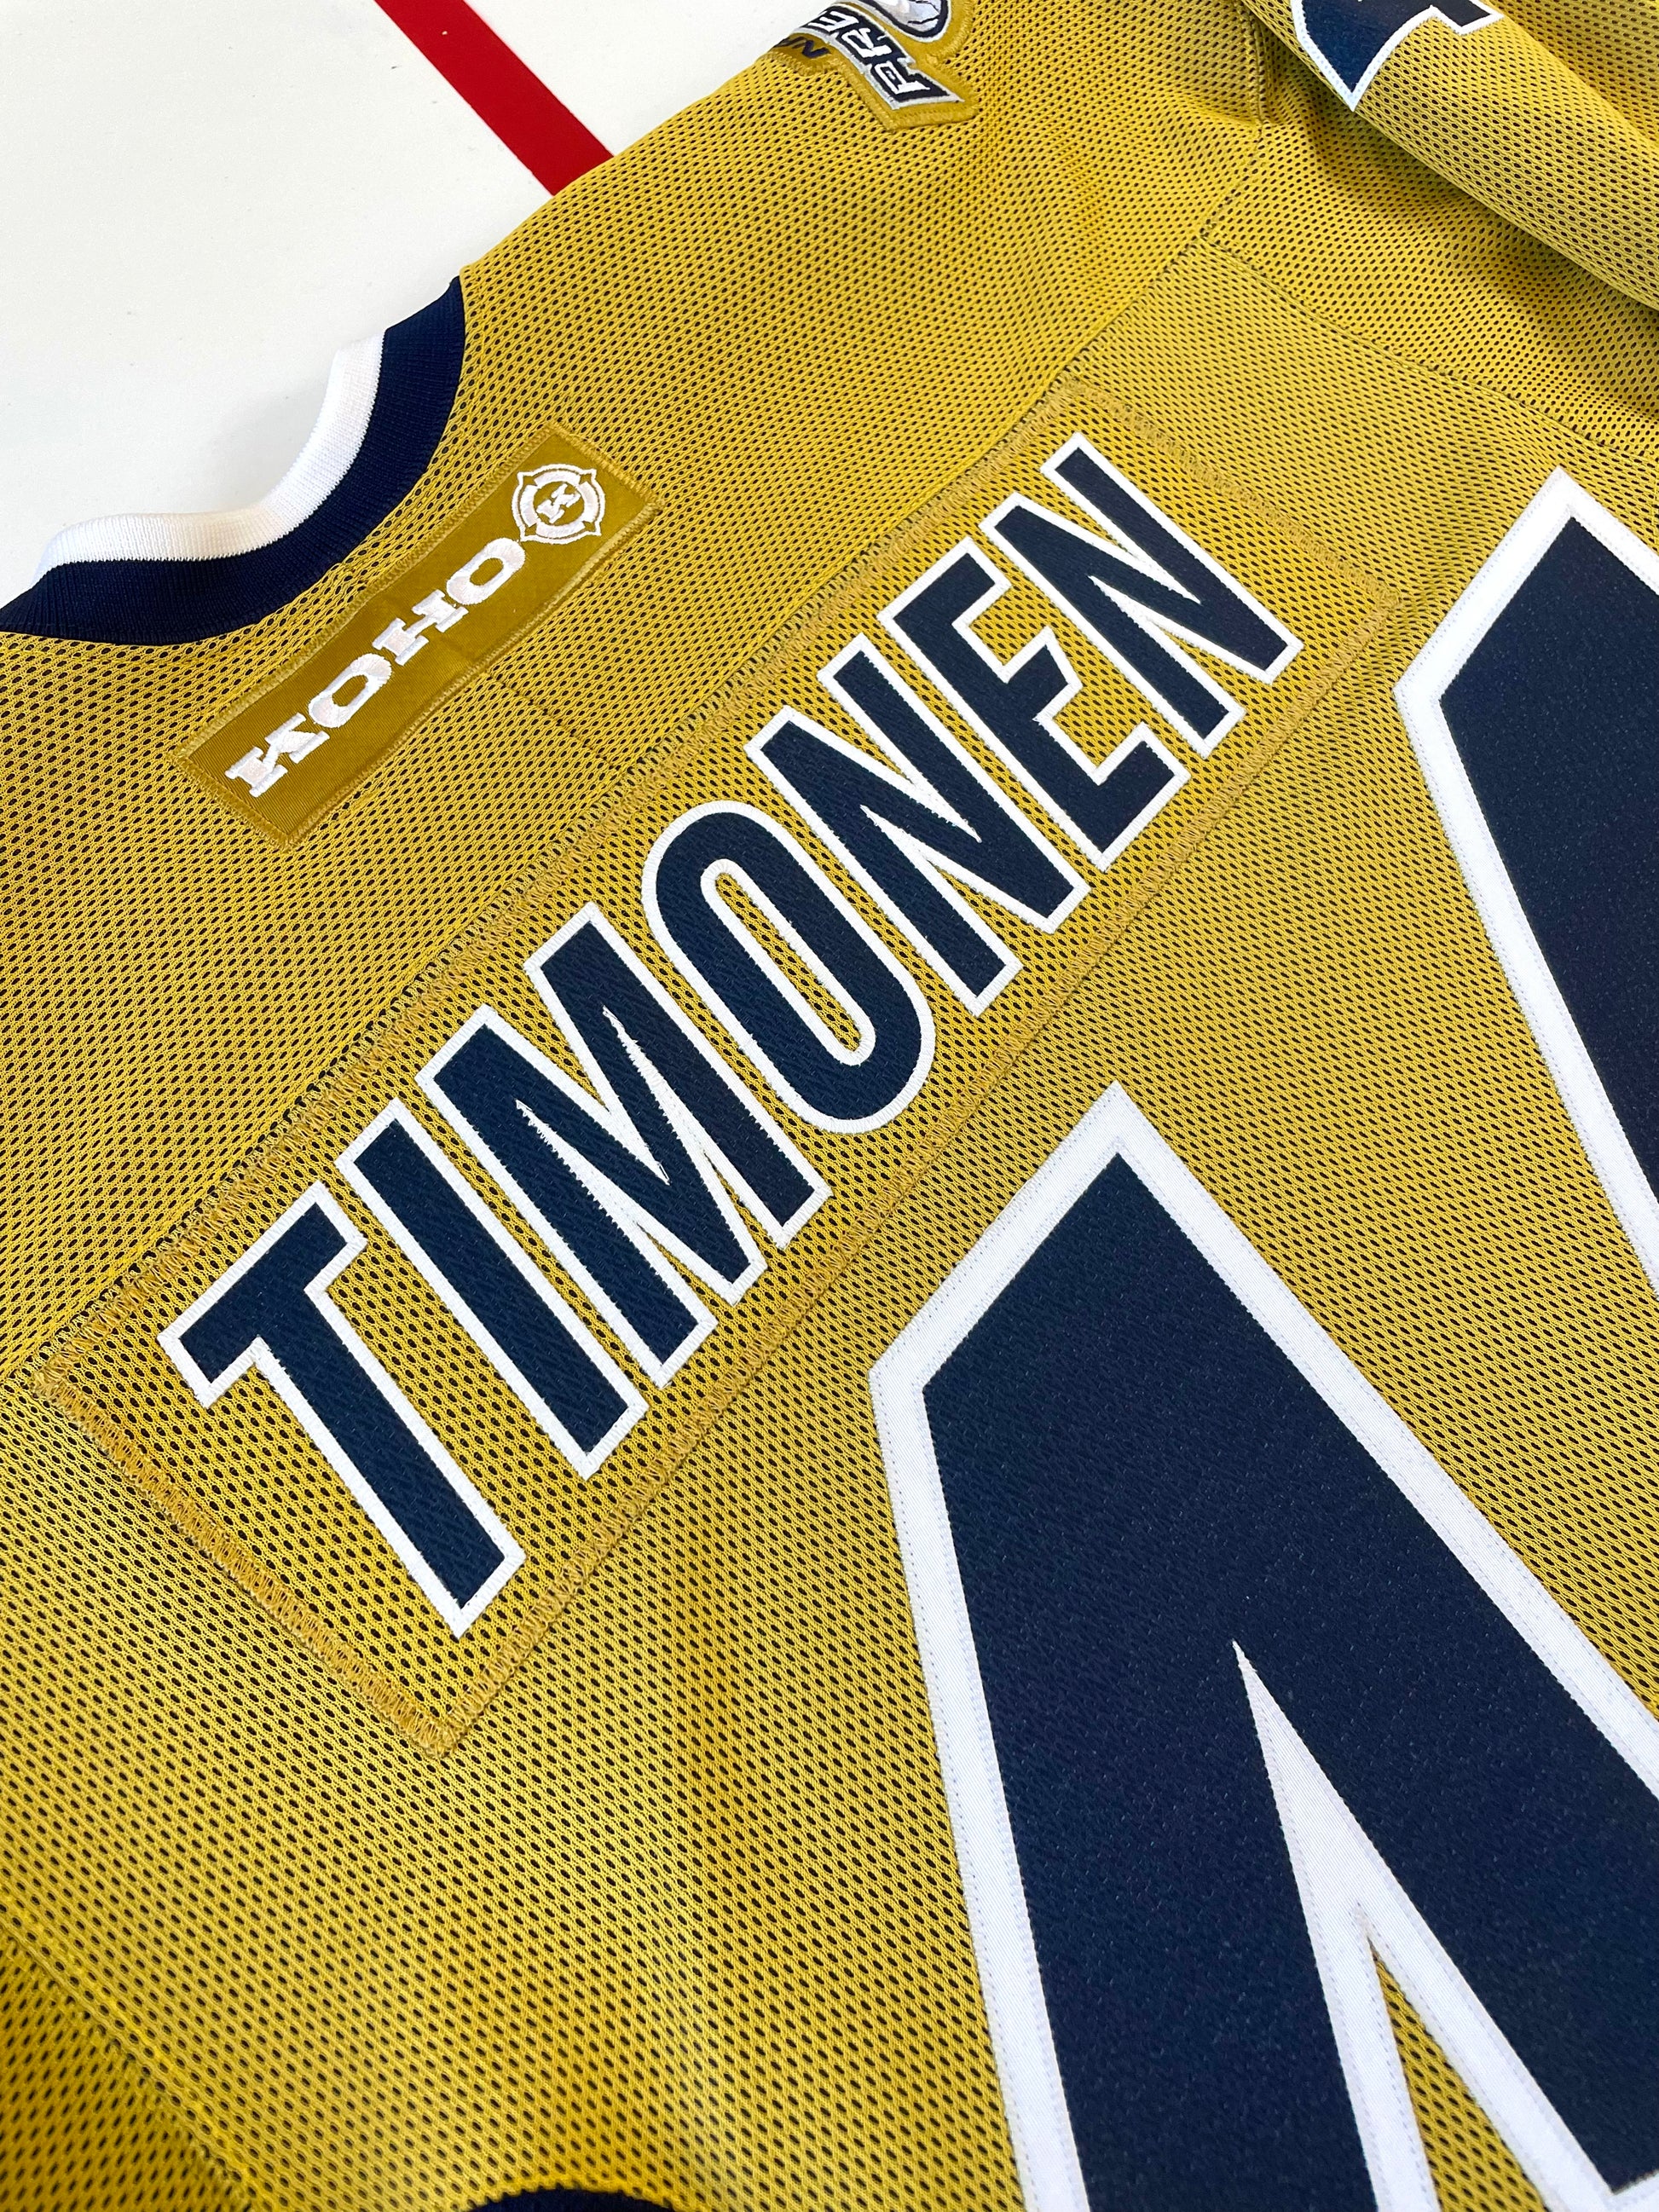 Kimmo Timonen 2006-2007 Nashville Predators Third Set Game Worn Jersey —  Desert Hockey Threads